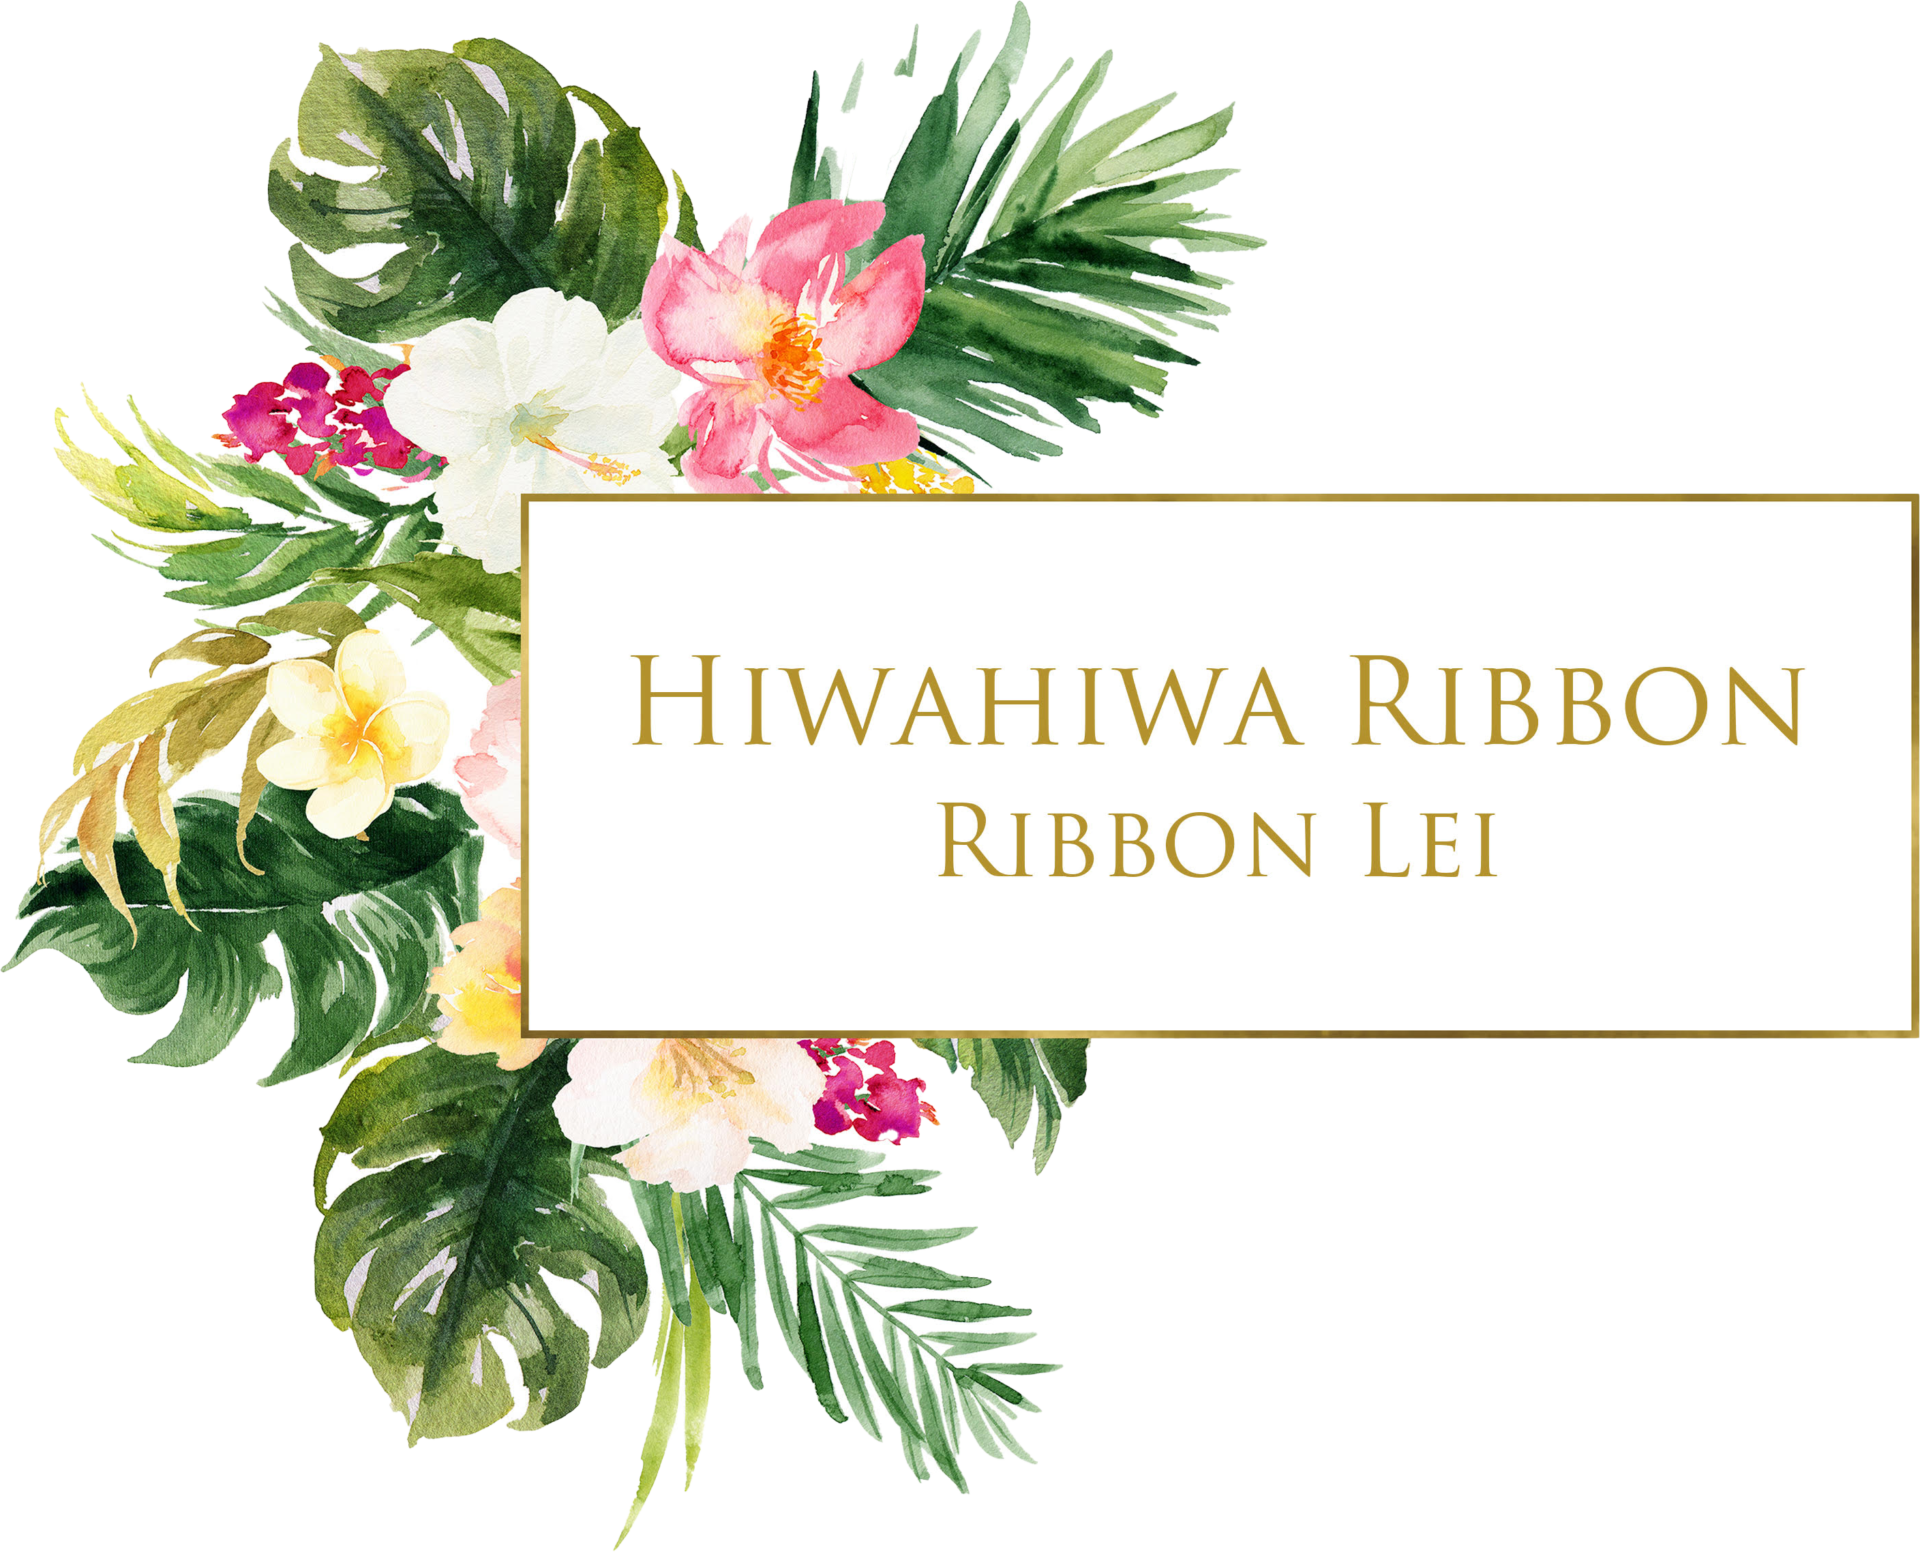 Hiwahiwa Ribbon